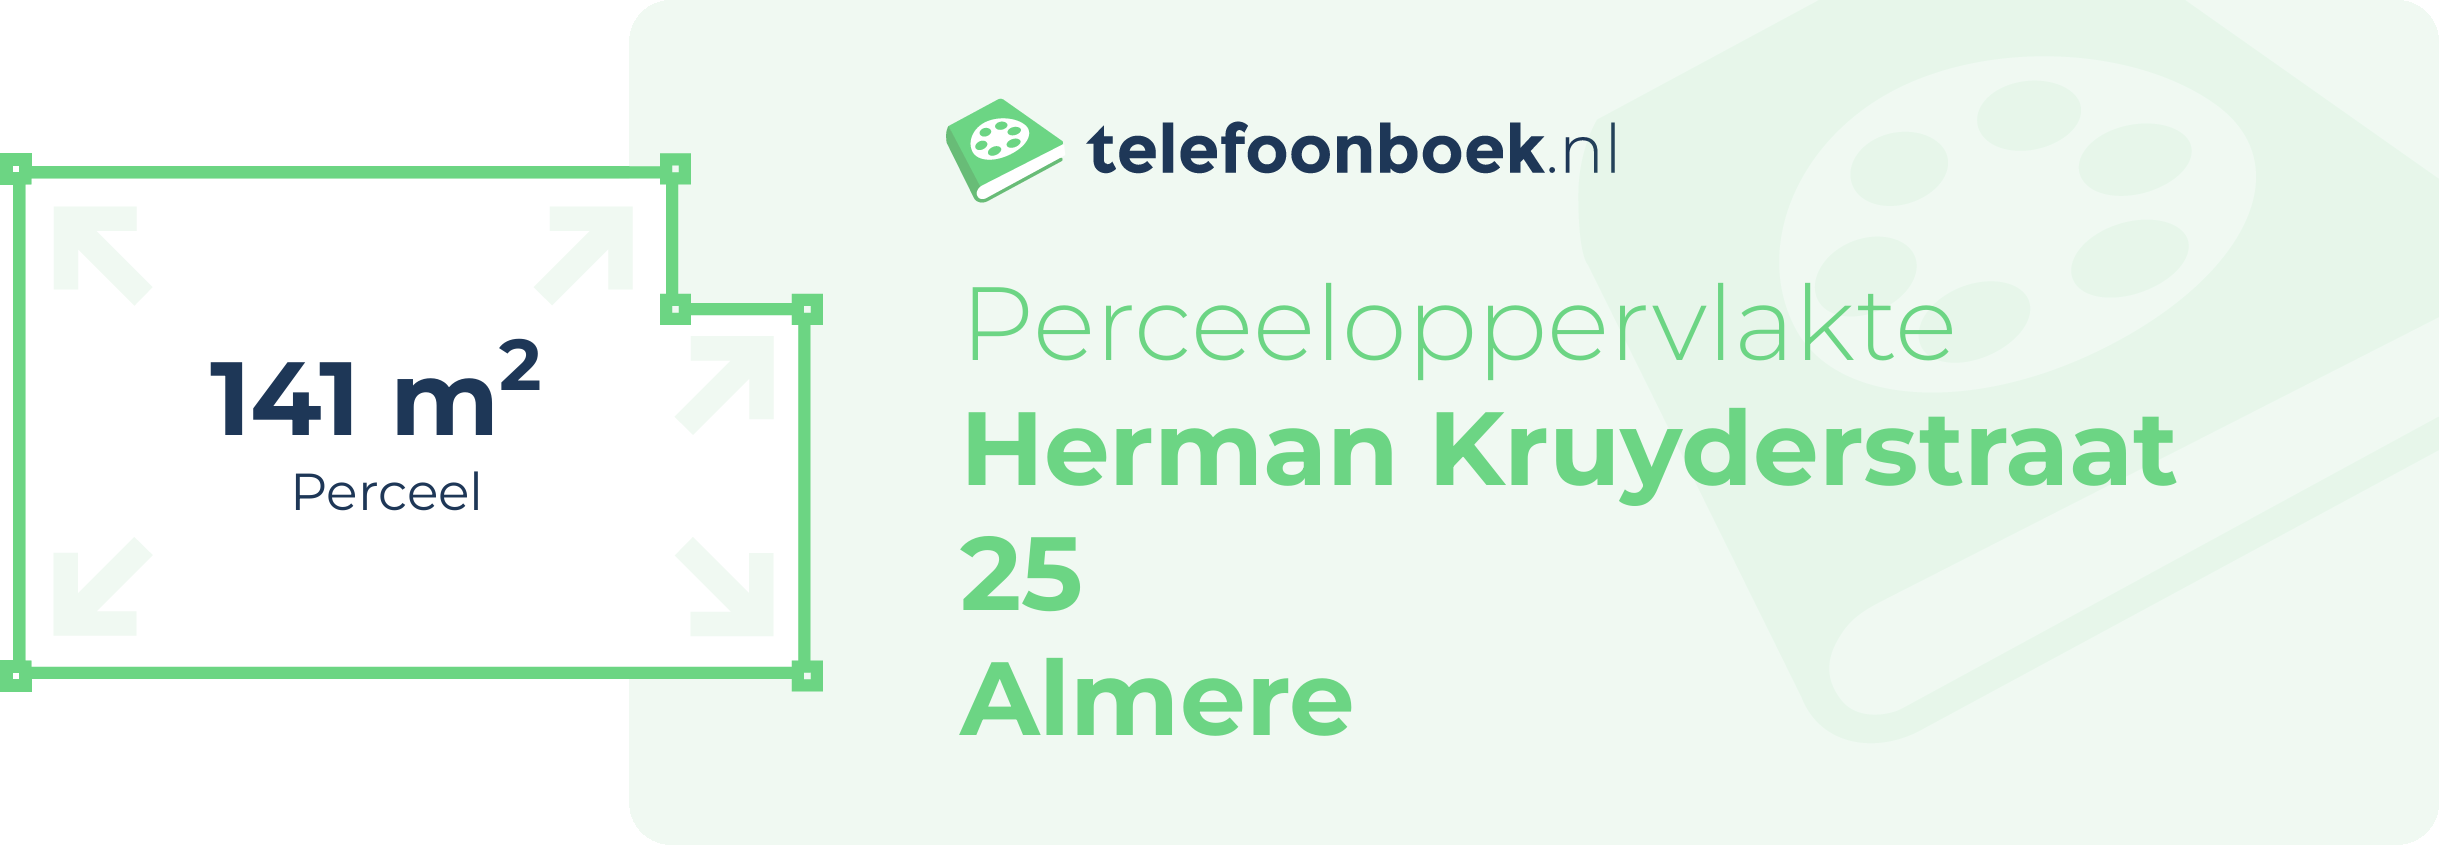 Perceeloppervlakte Herman Kruyderstraat 25 Almere